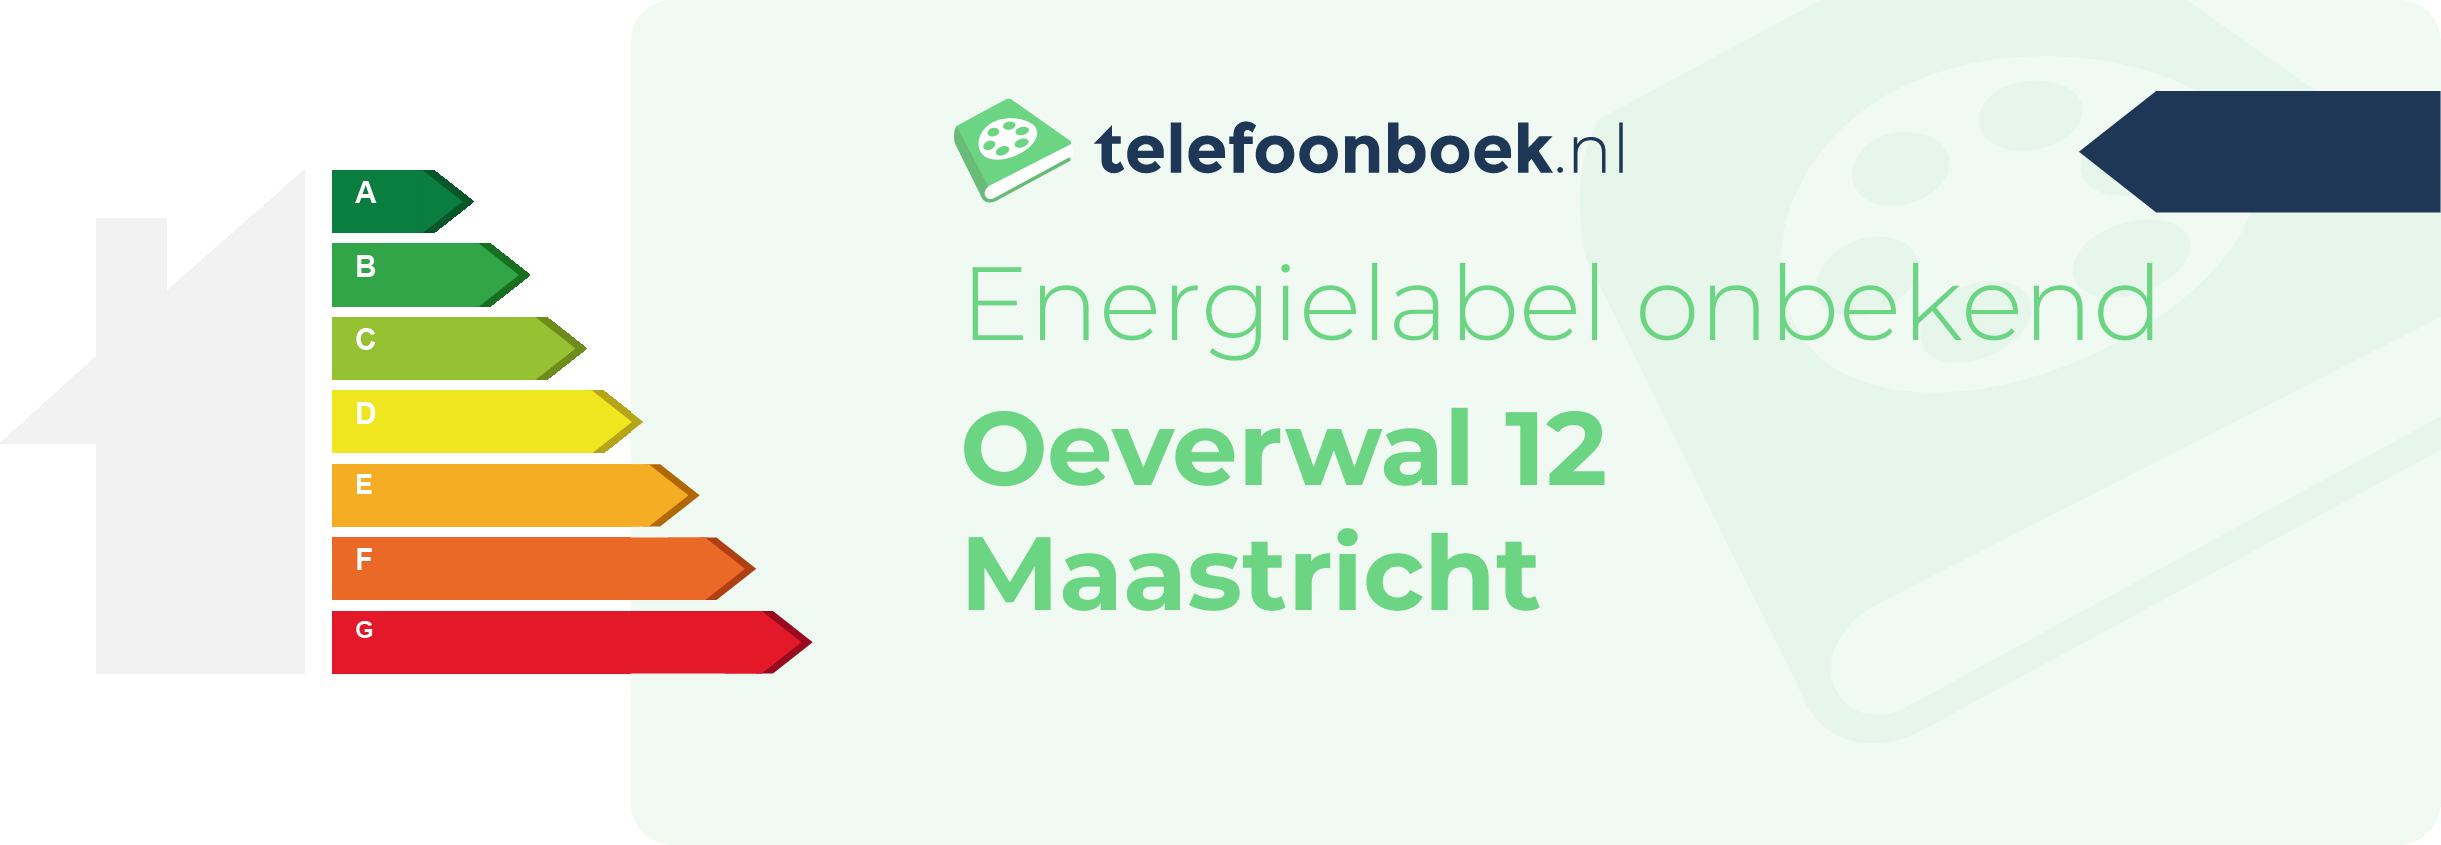 Energielabel Oeverwal 12 Maastricht